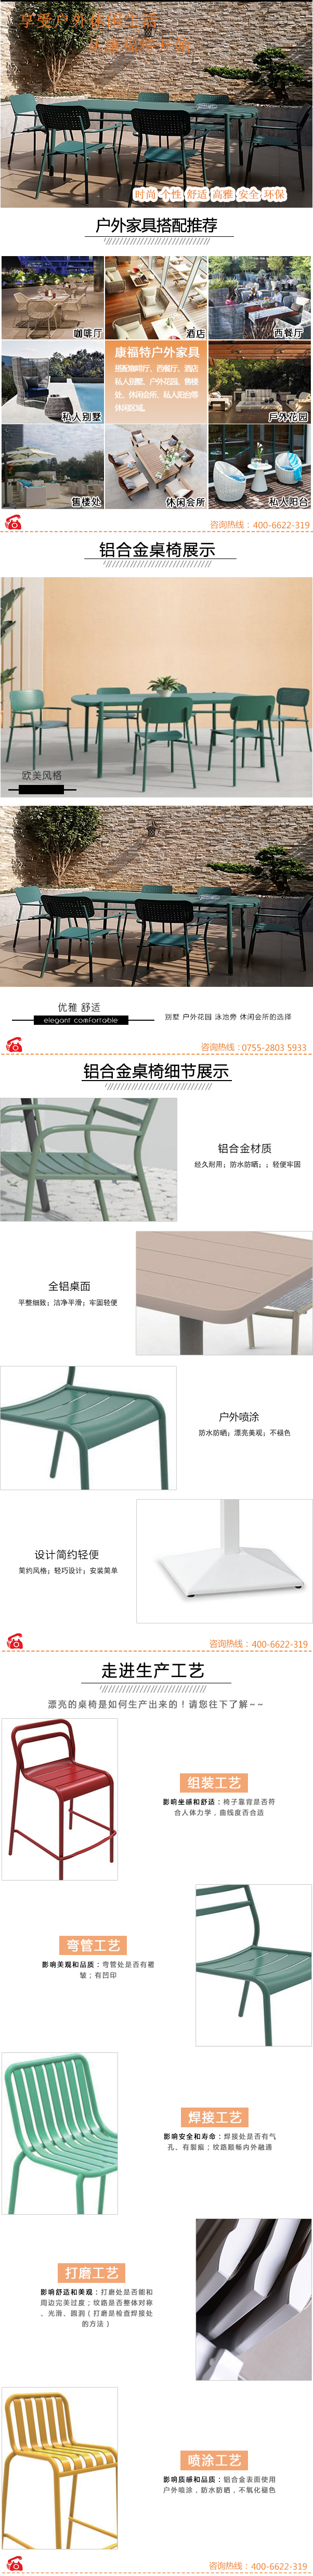 Varmax Furniture桌椅